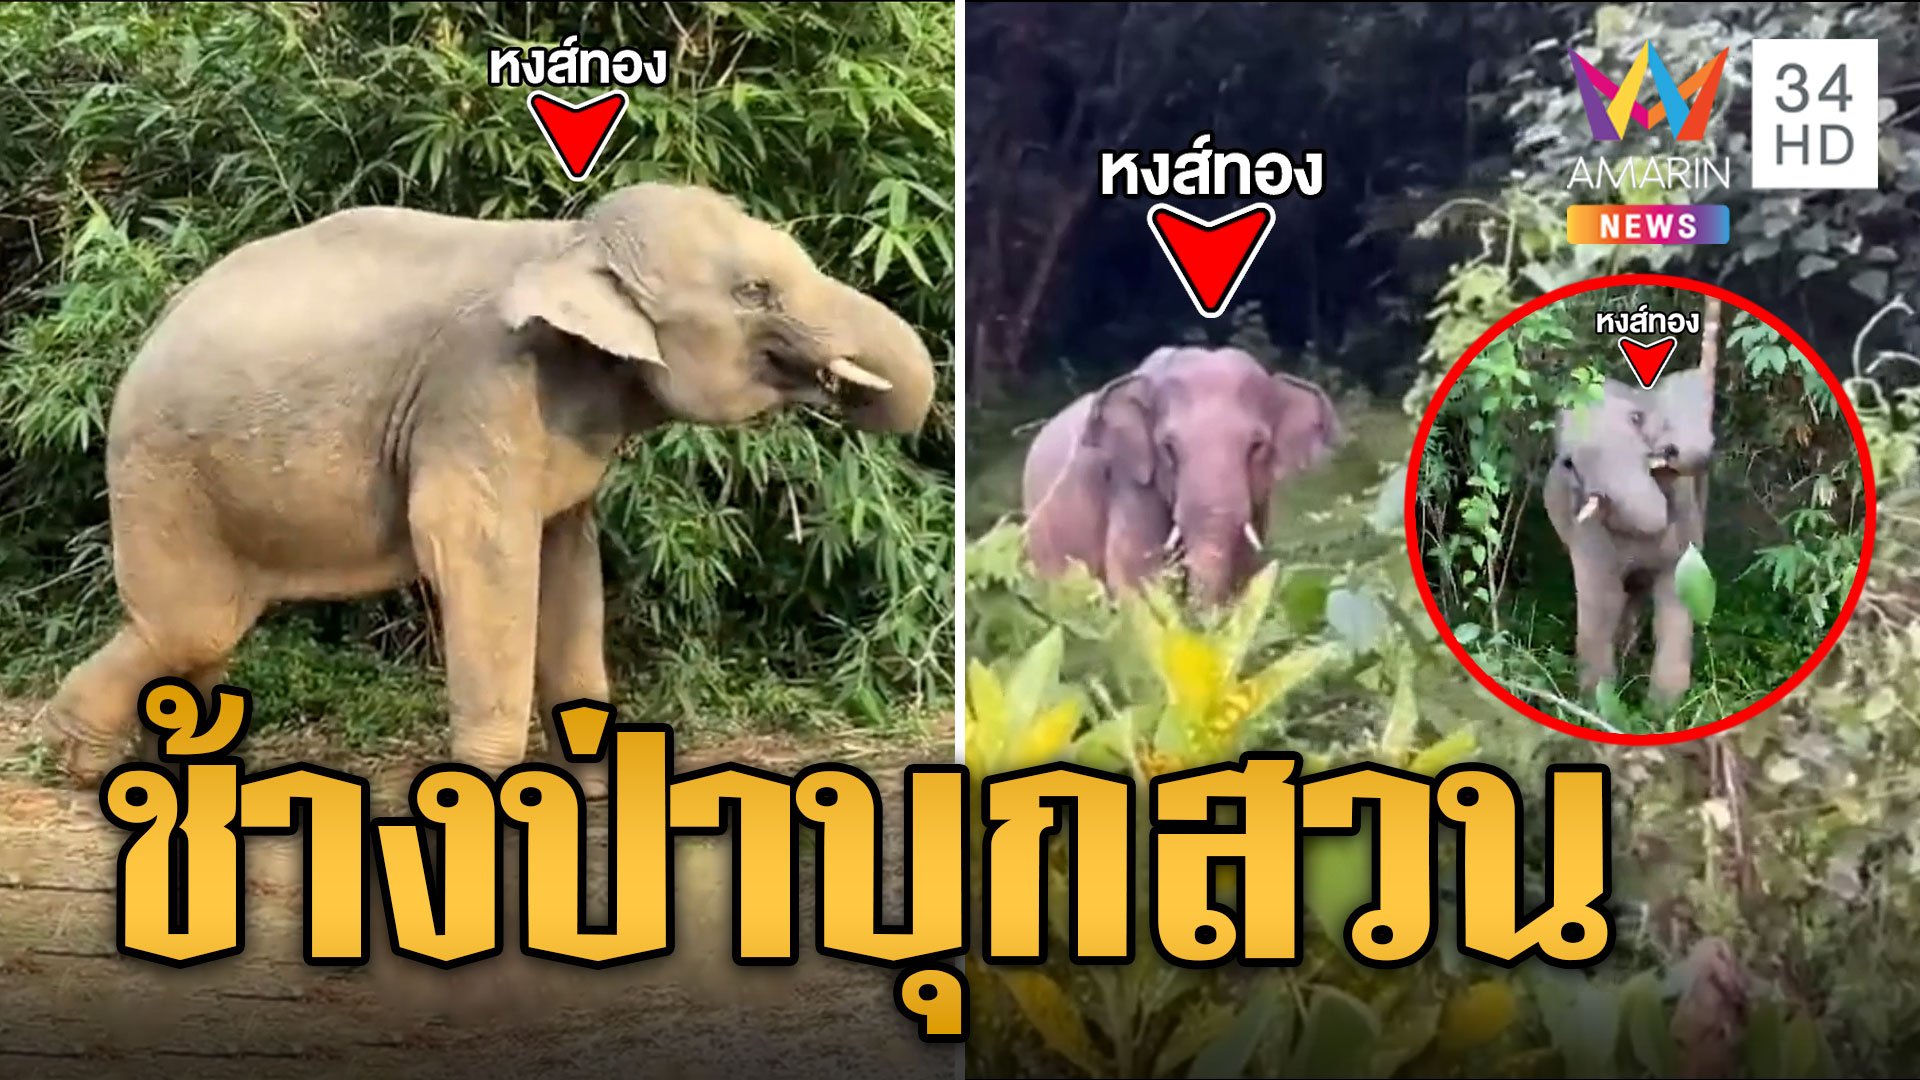 หงส์ทอง ช้างป่าจ่าโขลงโชว์สเต็ปเต้น หลังถูก จนท.ไล่กลับเข้าป่า | ข่าวเที่ยงอมรินทร์ | 24 ต.ค. 66 | AMARIN TVHD34